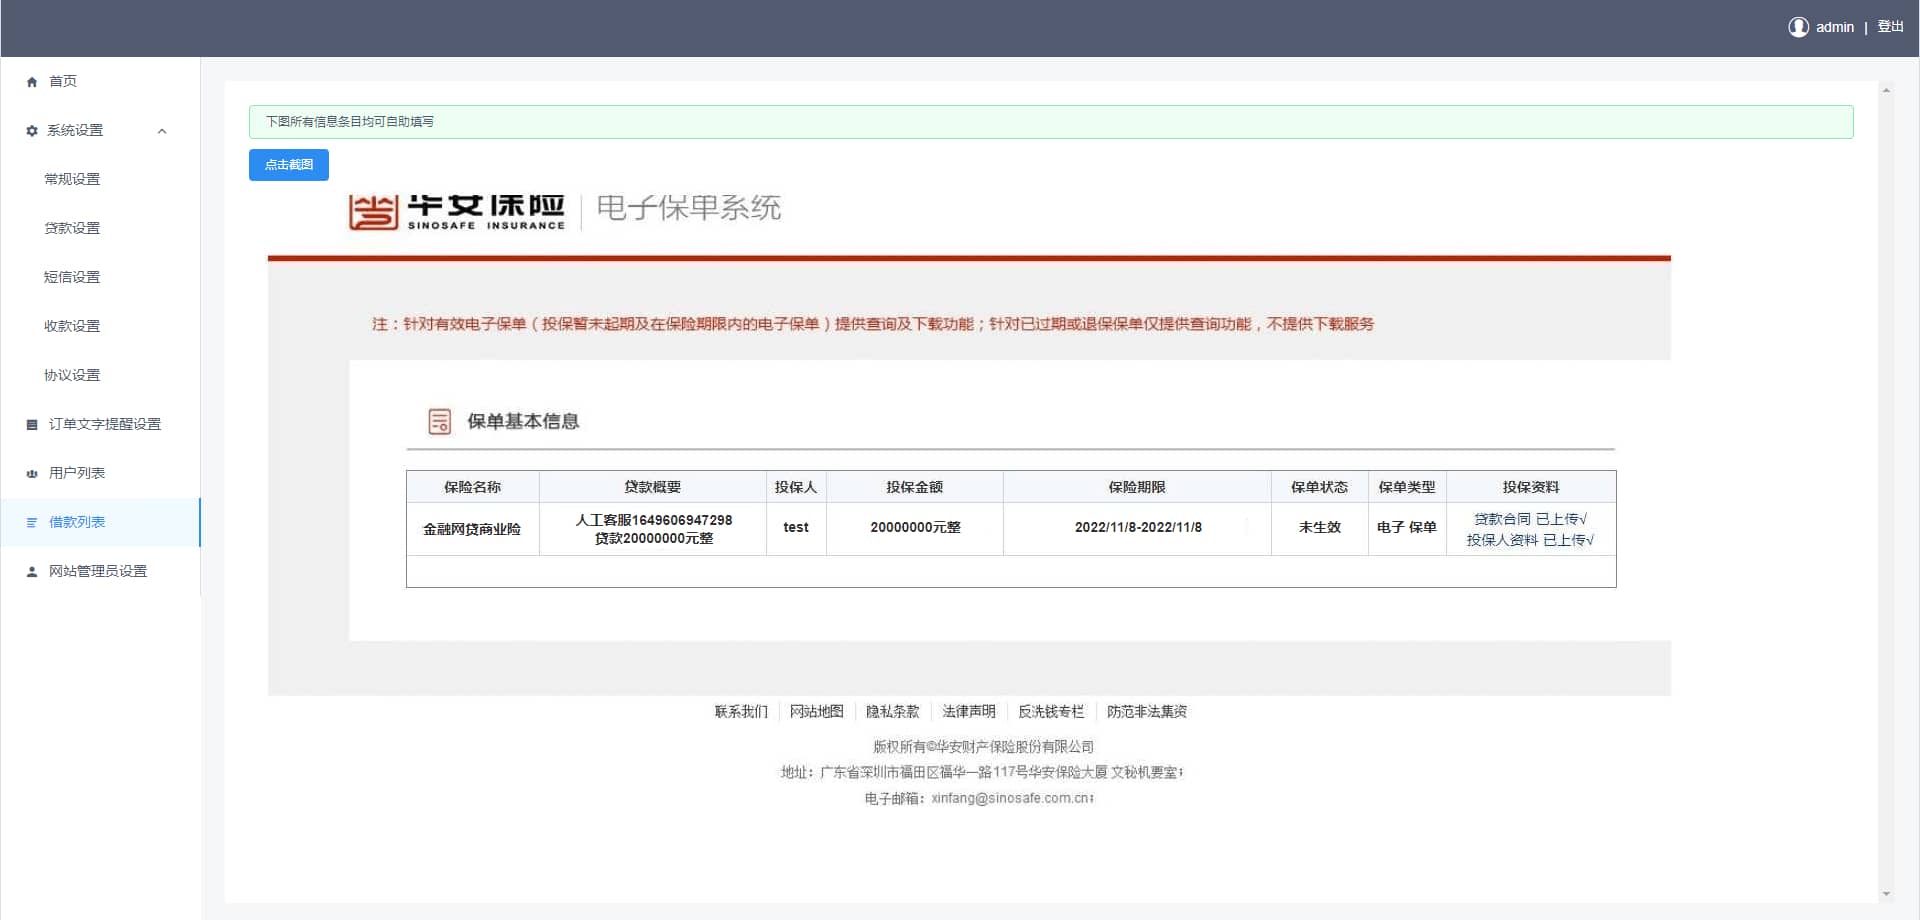 D1440 开源版中文和越南语贷款源码 贷款平台下载 小额贷款系统 贷款源码运营版插图3